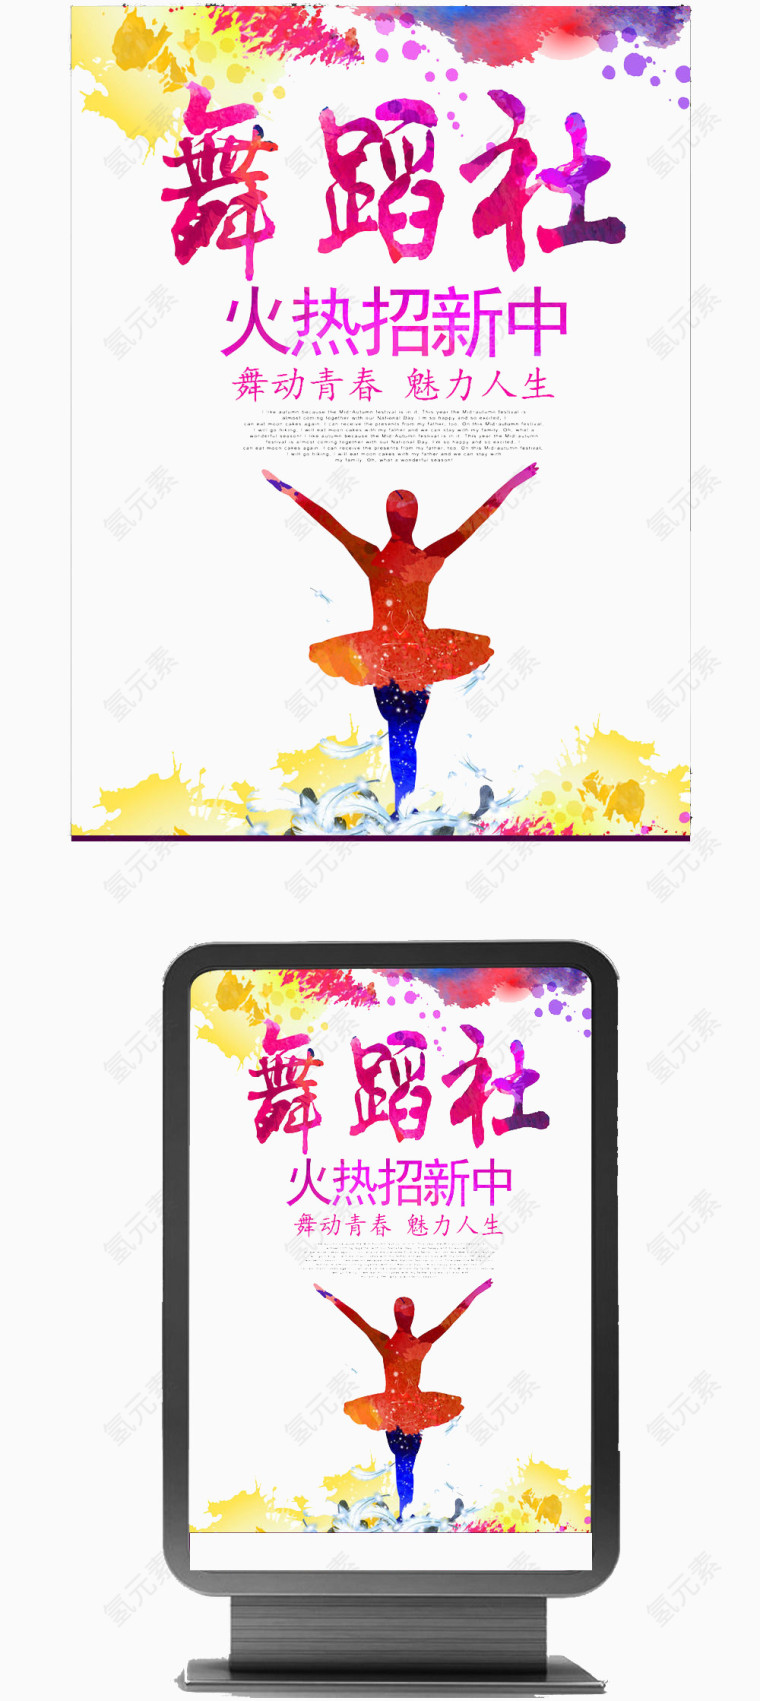 舞蹈社招新海报